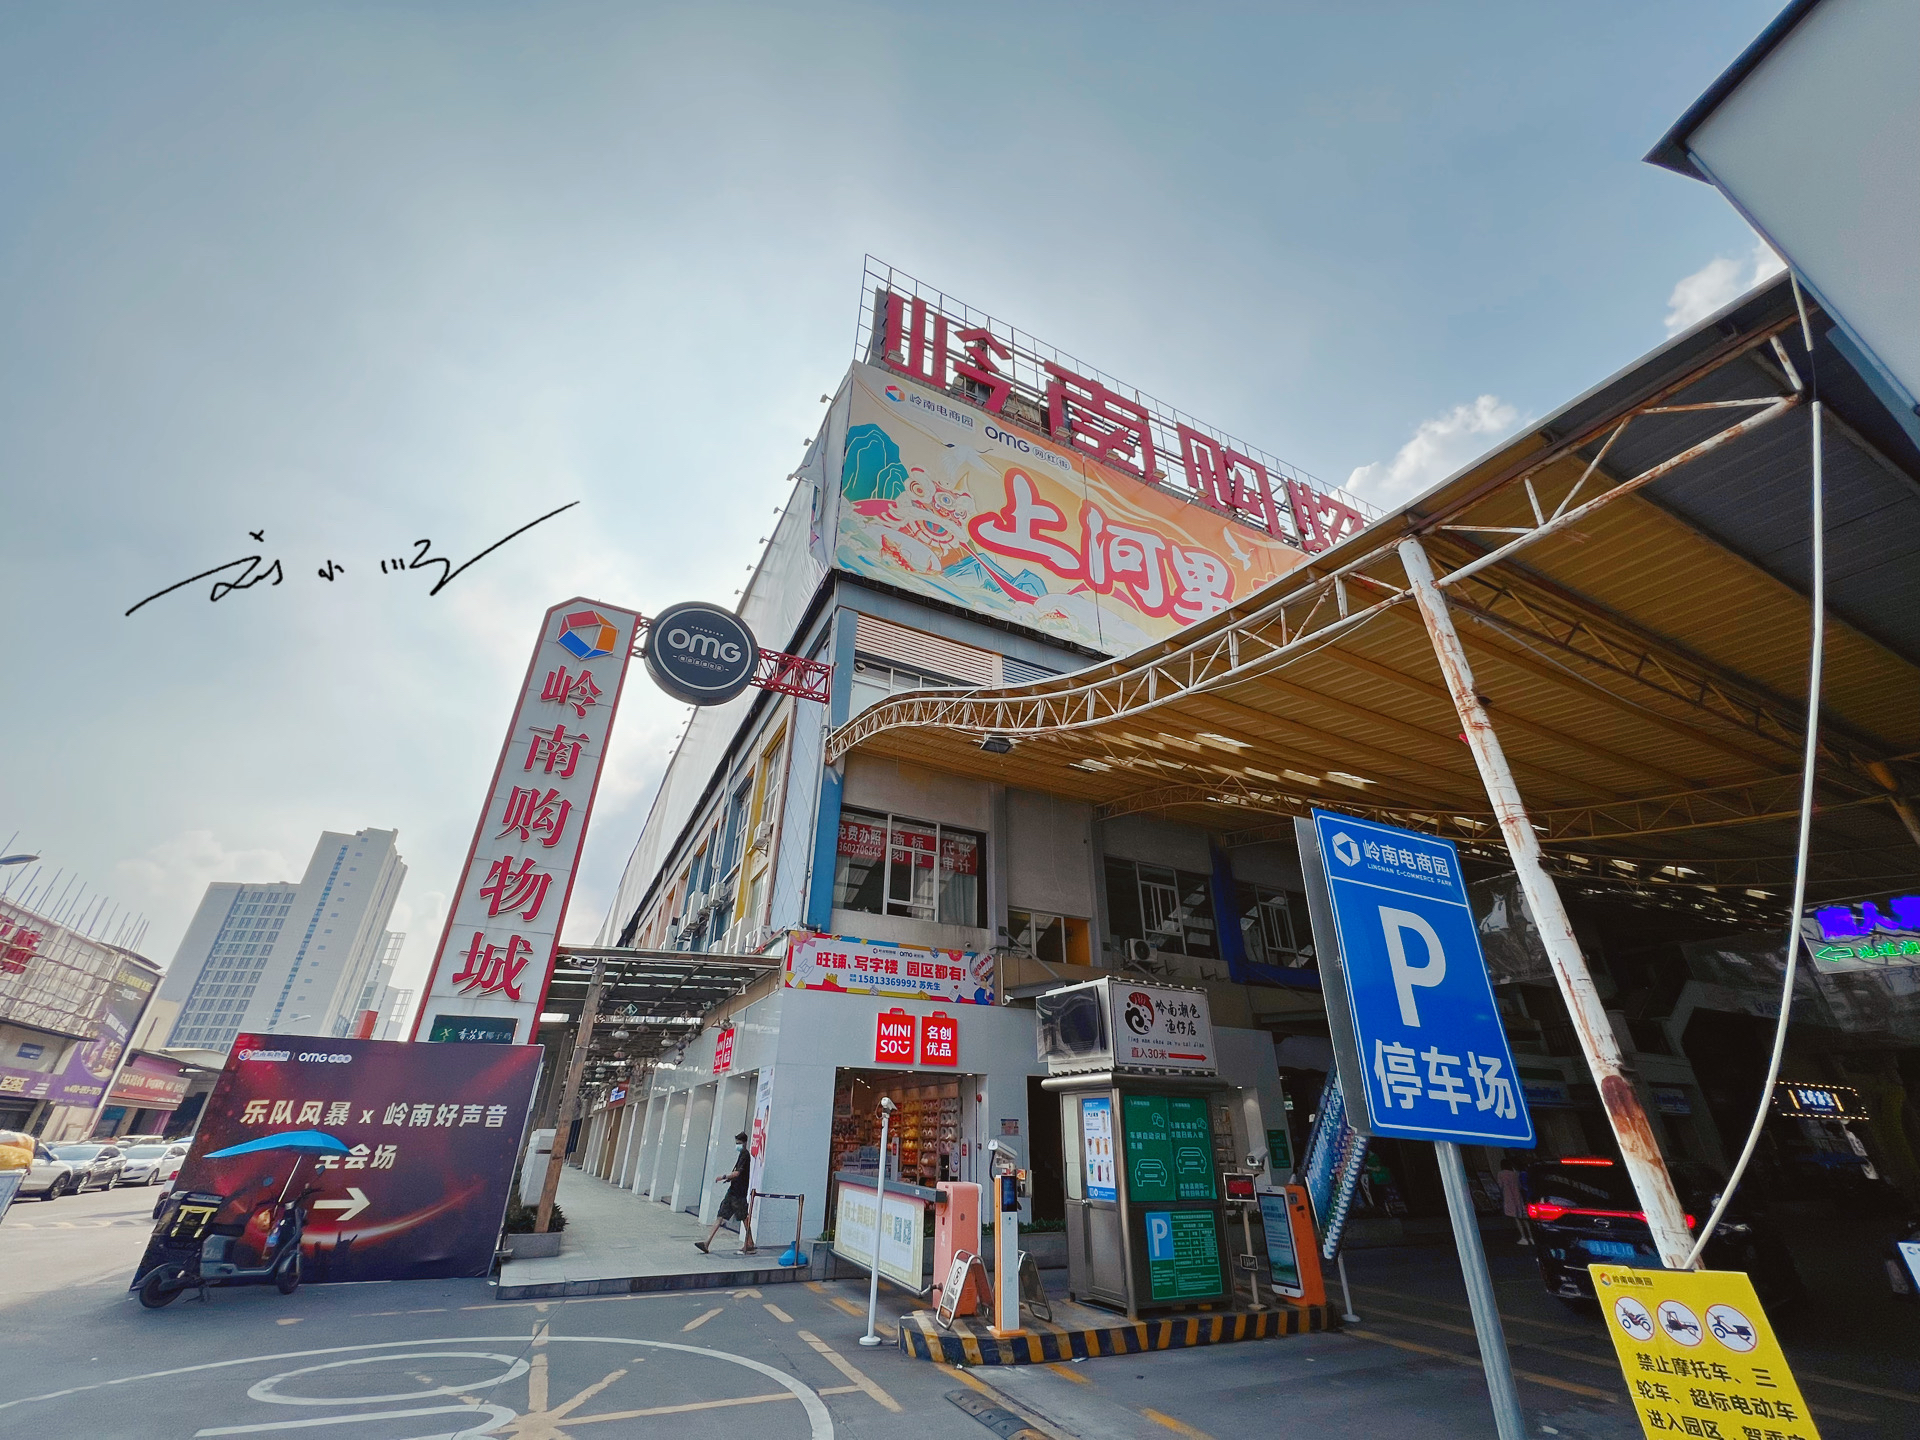 广州番禺有一条网红街,以前据说是批发市场,现在变得很洋气